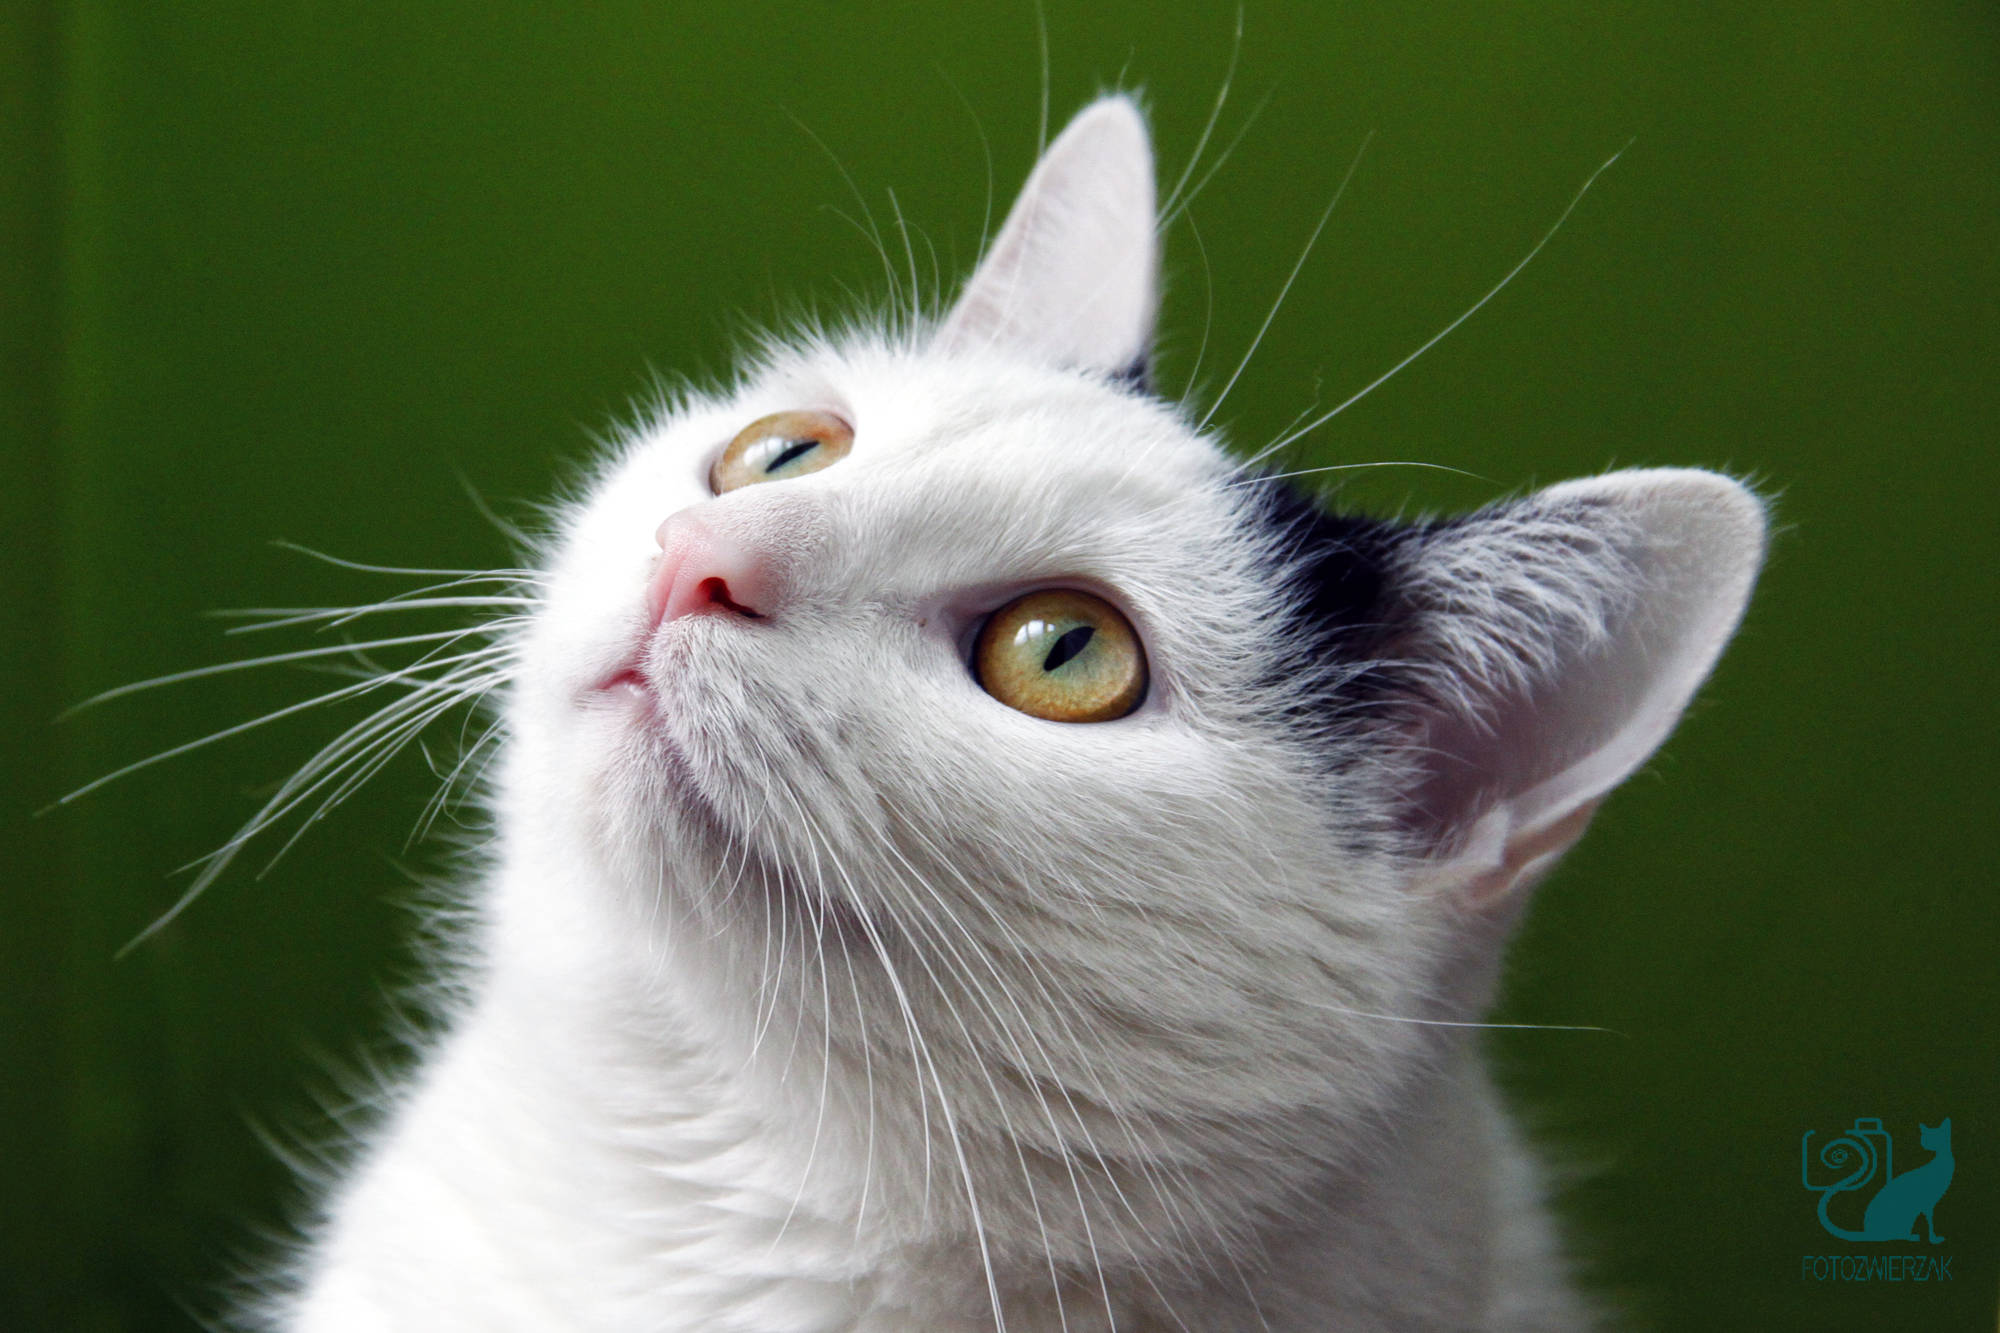 biały kot z żółtymi oczami, kot domowy, koty domowe zdjęcia, koty zdjęcia, zdjęcia kotów śmieszne, zdjęcia kotów słodkie, słodkie zdjęcia kotów, zdjęcia kotów domowych, koty zdjęcia galeria, najpiękniejsze koty na świecie, dzień kota, kocia sesja